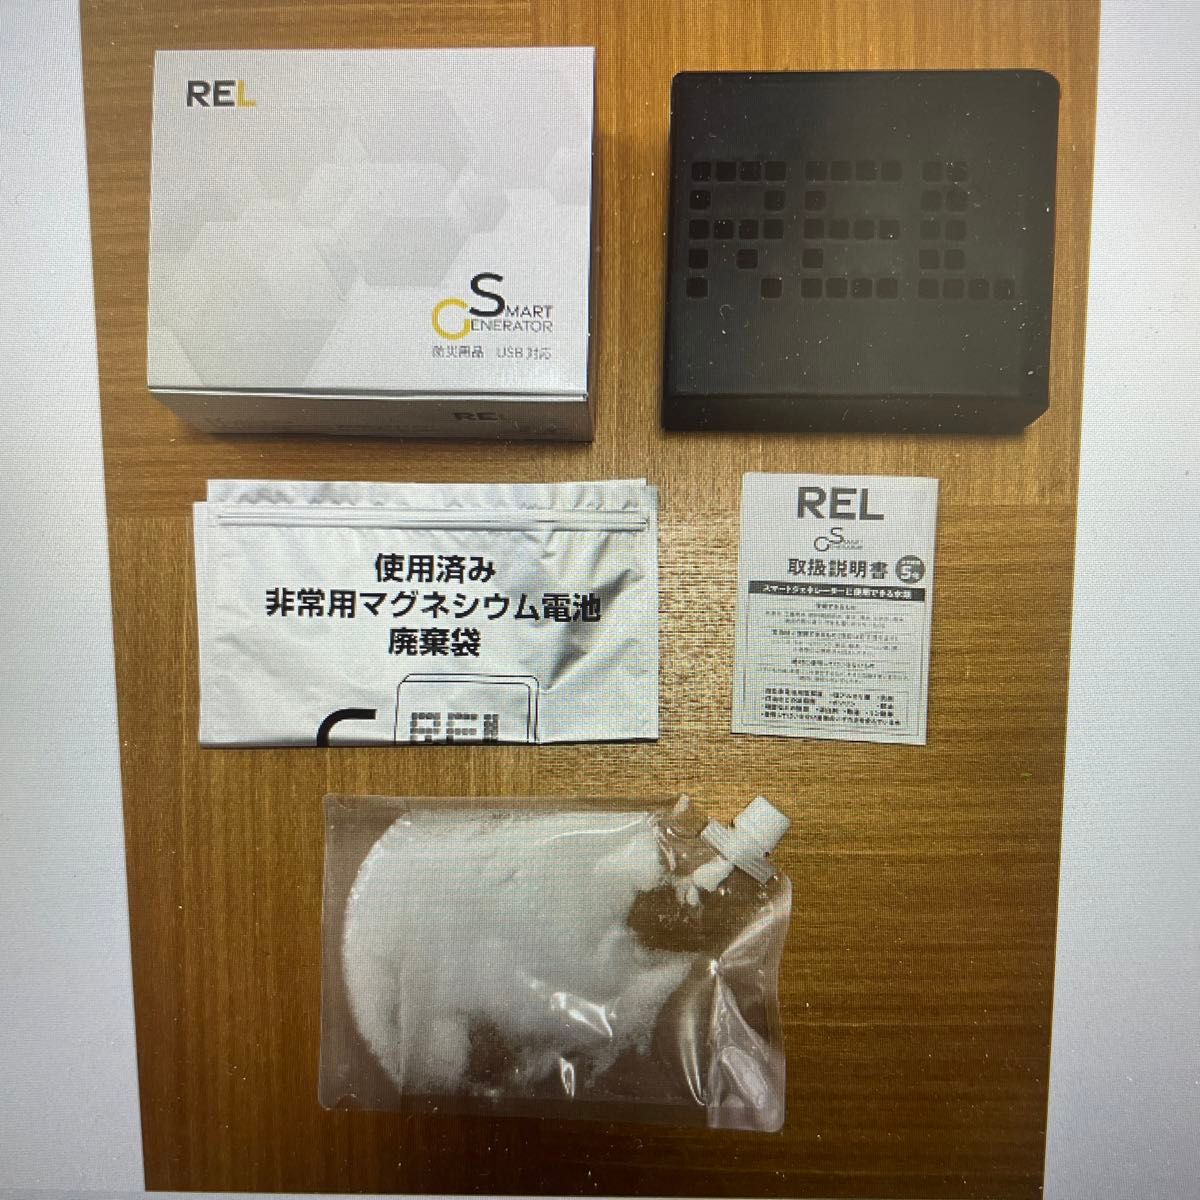 リアライズエナジー 非常用電源 REL スマートジェネレーター 水だけで発電 USB対応 PG-001 Realize